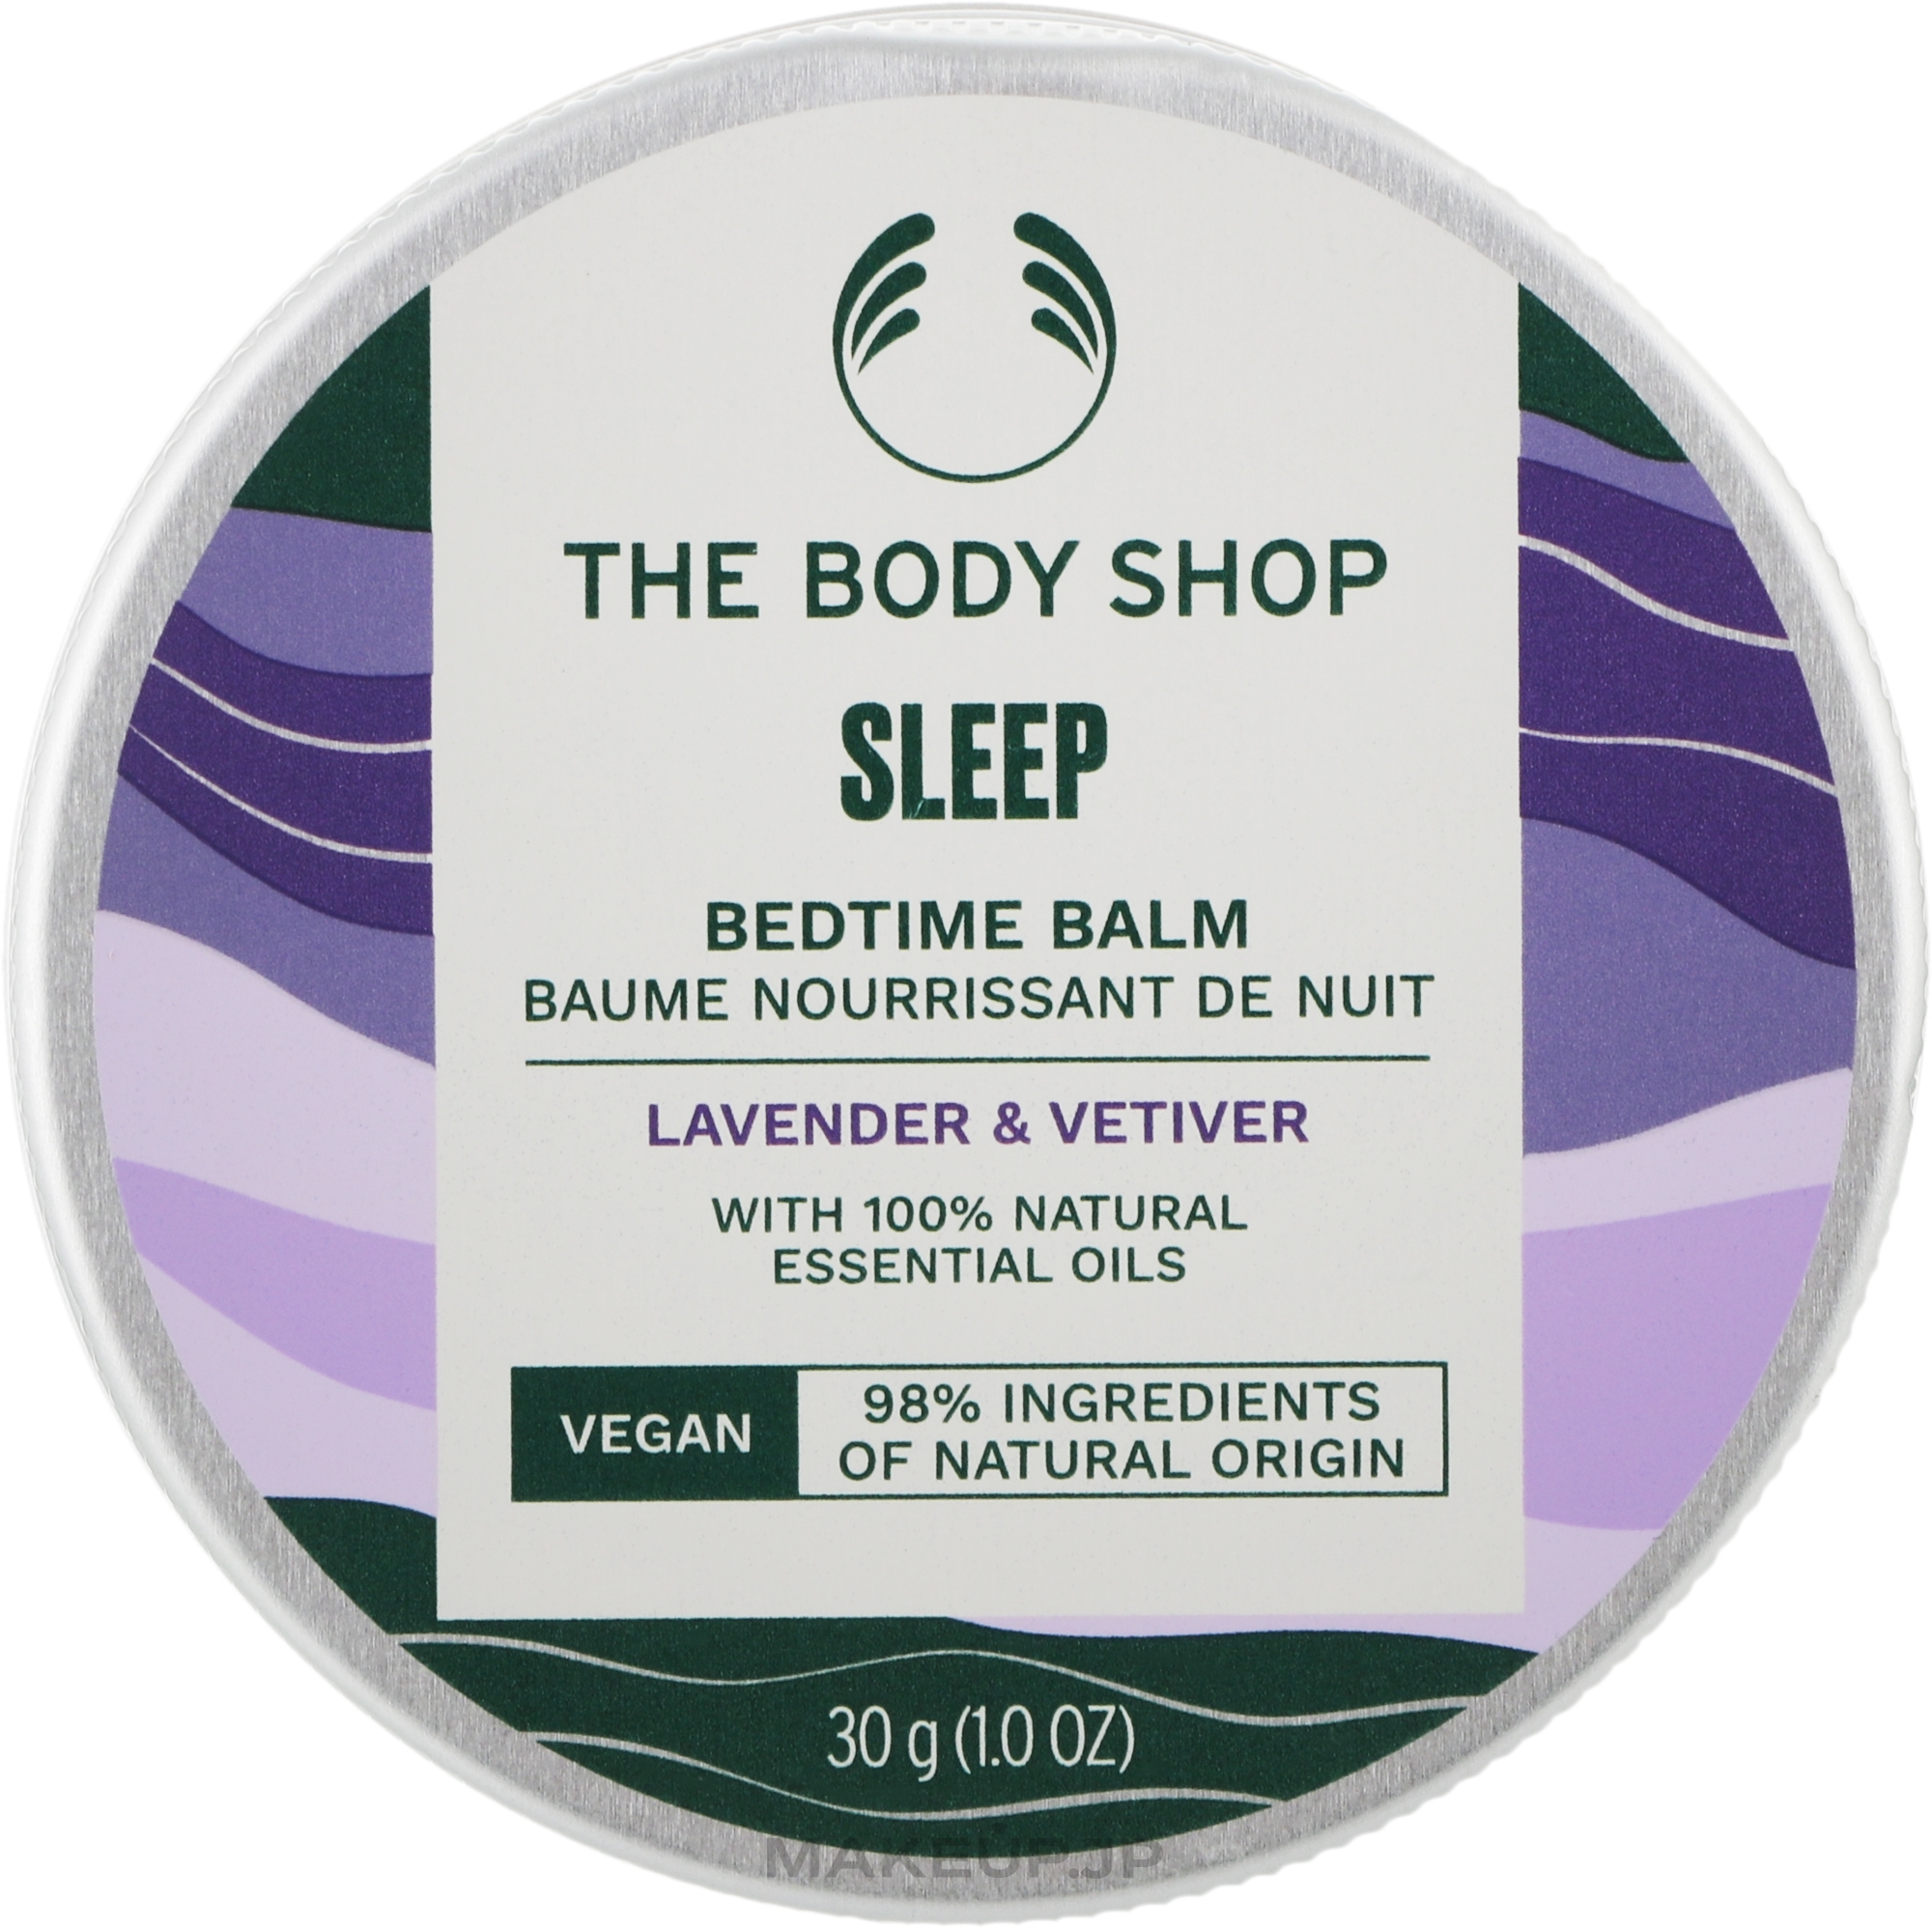 Bedtime Body Balm - The Body Shop Sleep Bedtime Balm — photo 30 g